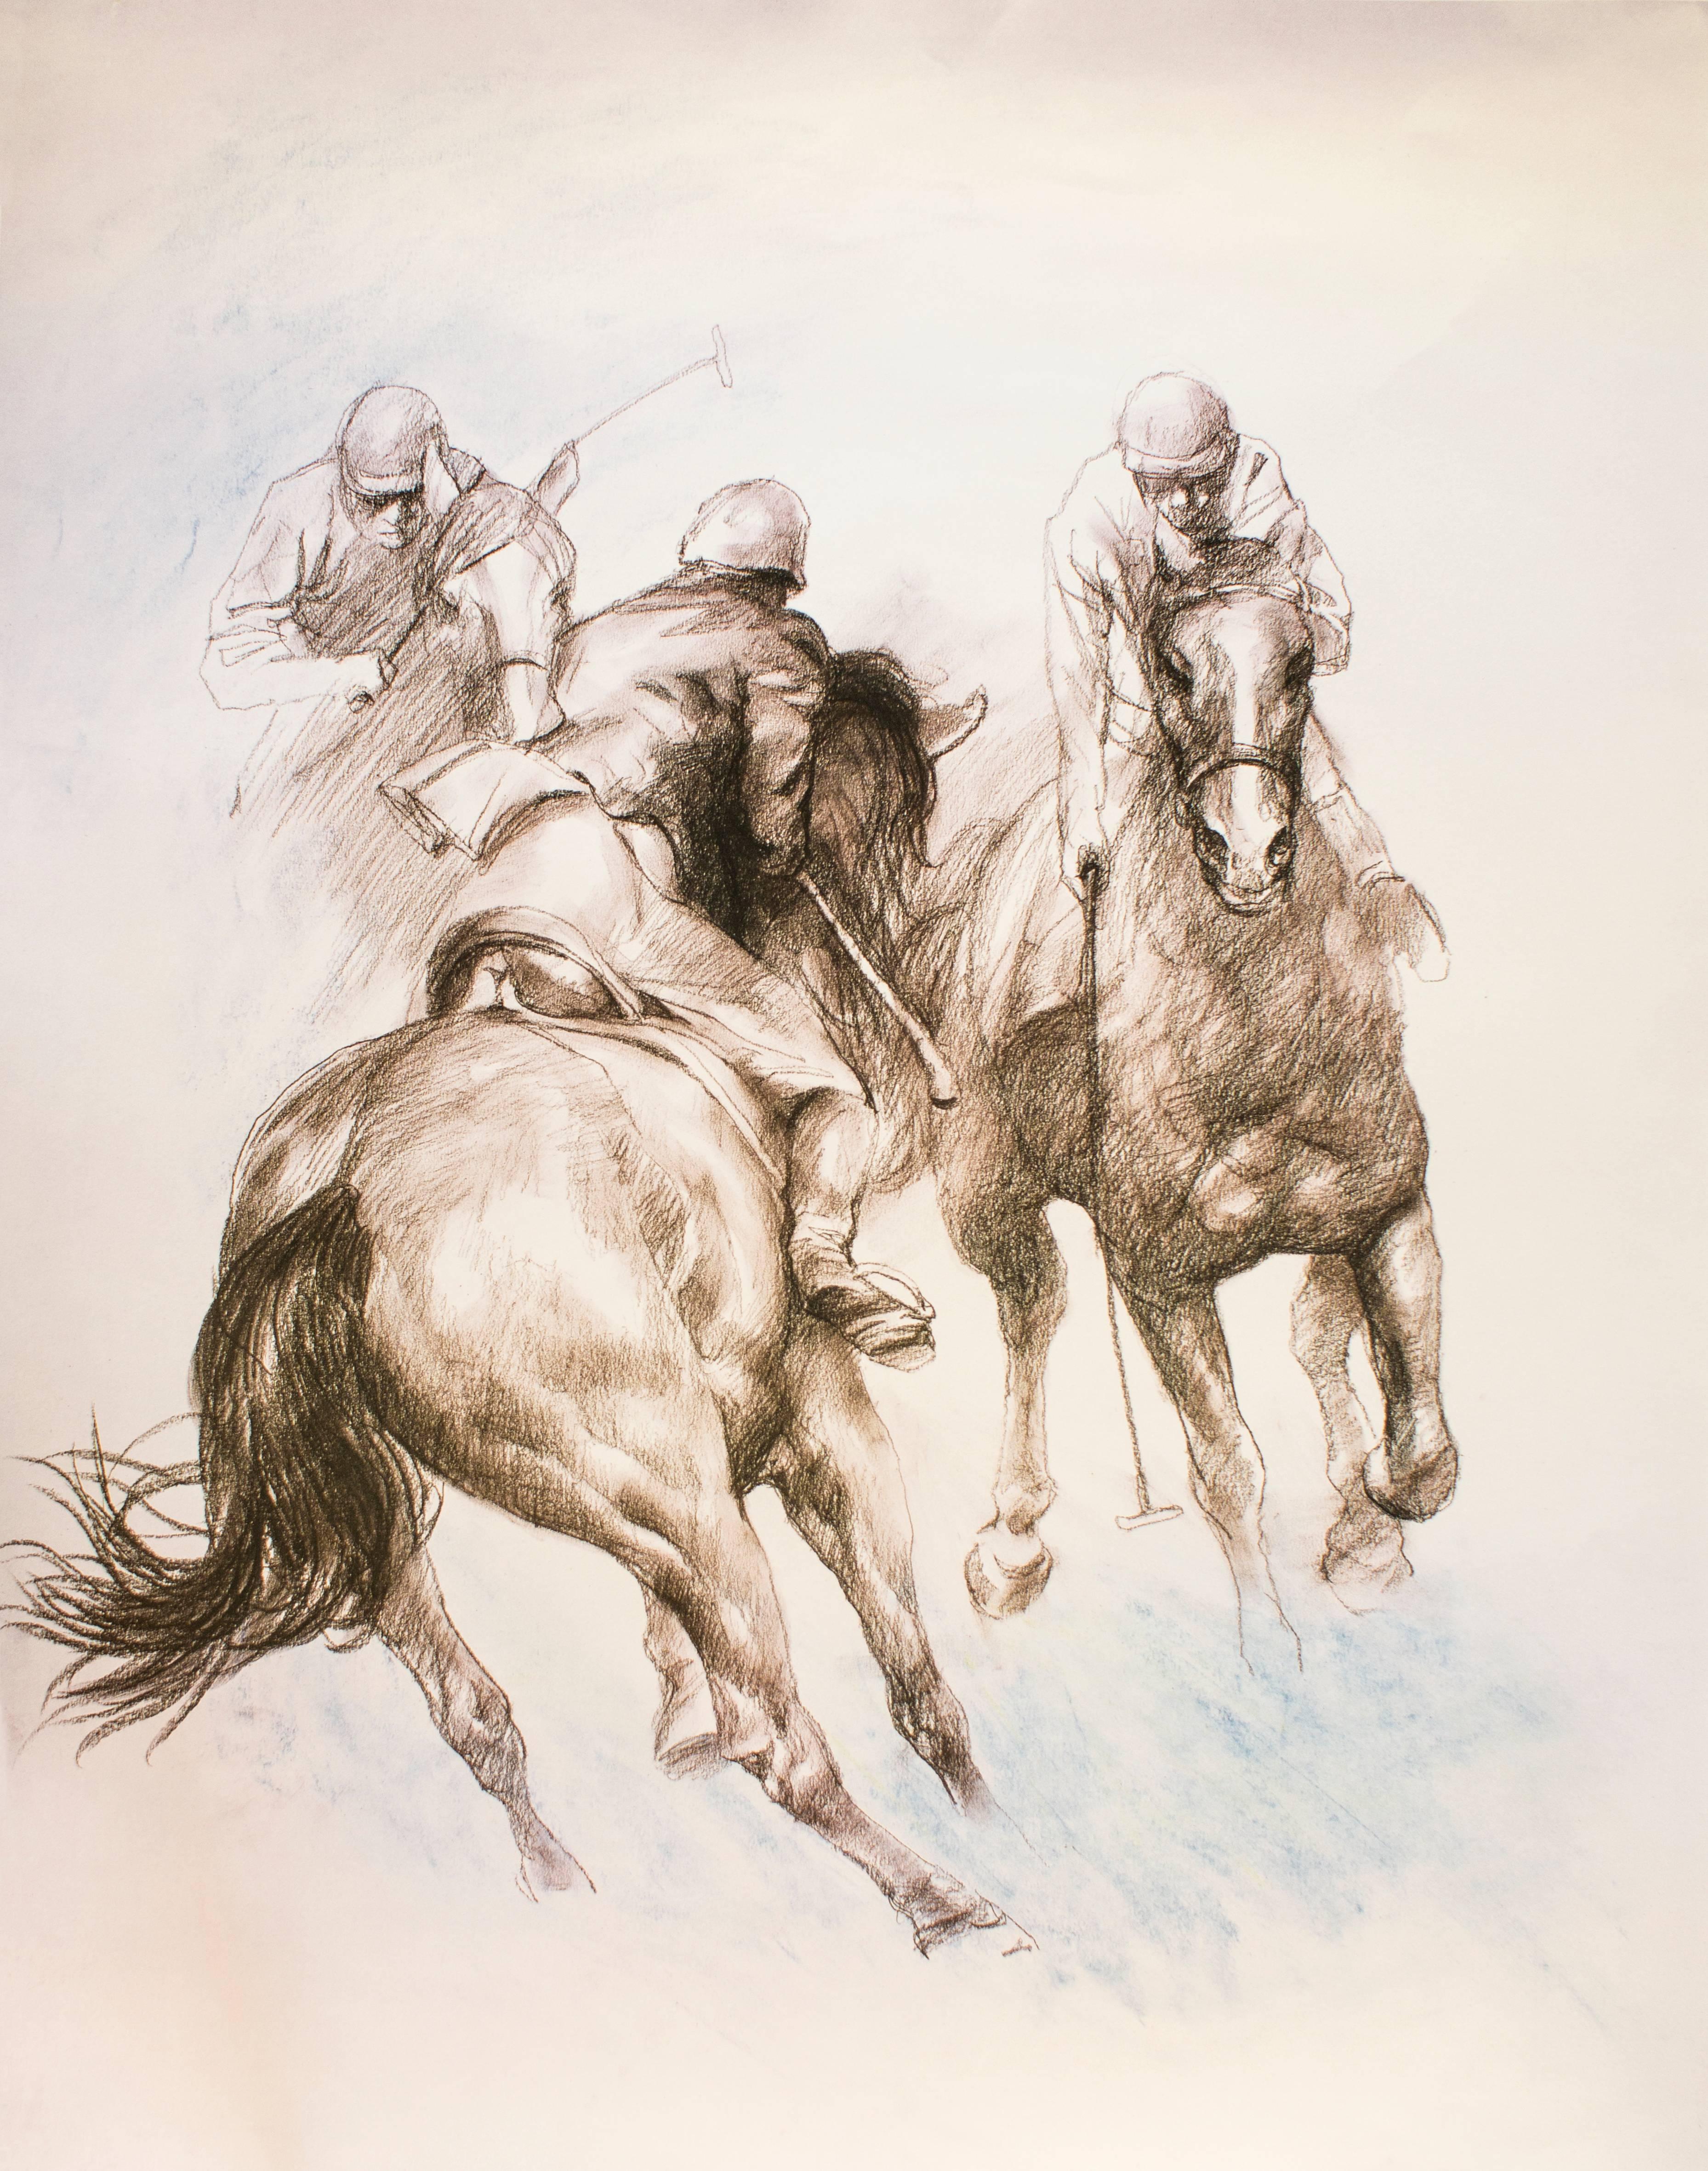 Zhou Zhiwei Animal Print - Equestrian - Original Lithograph by Zho Zhiwei - 2008